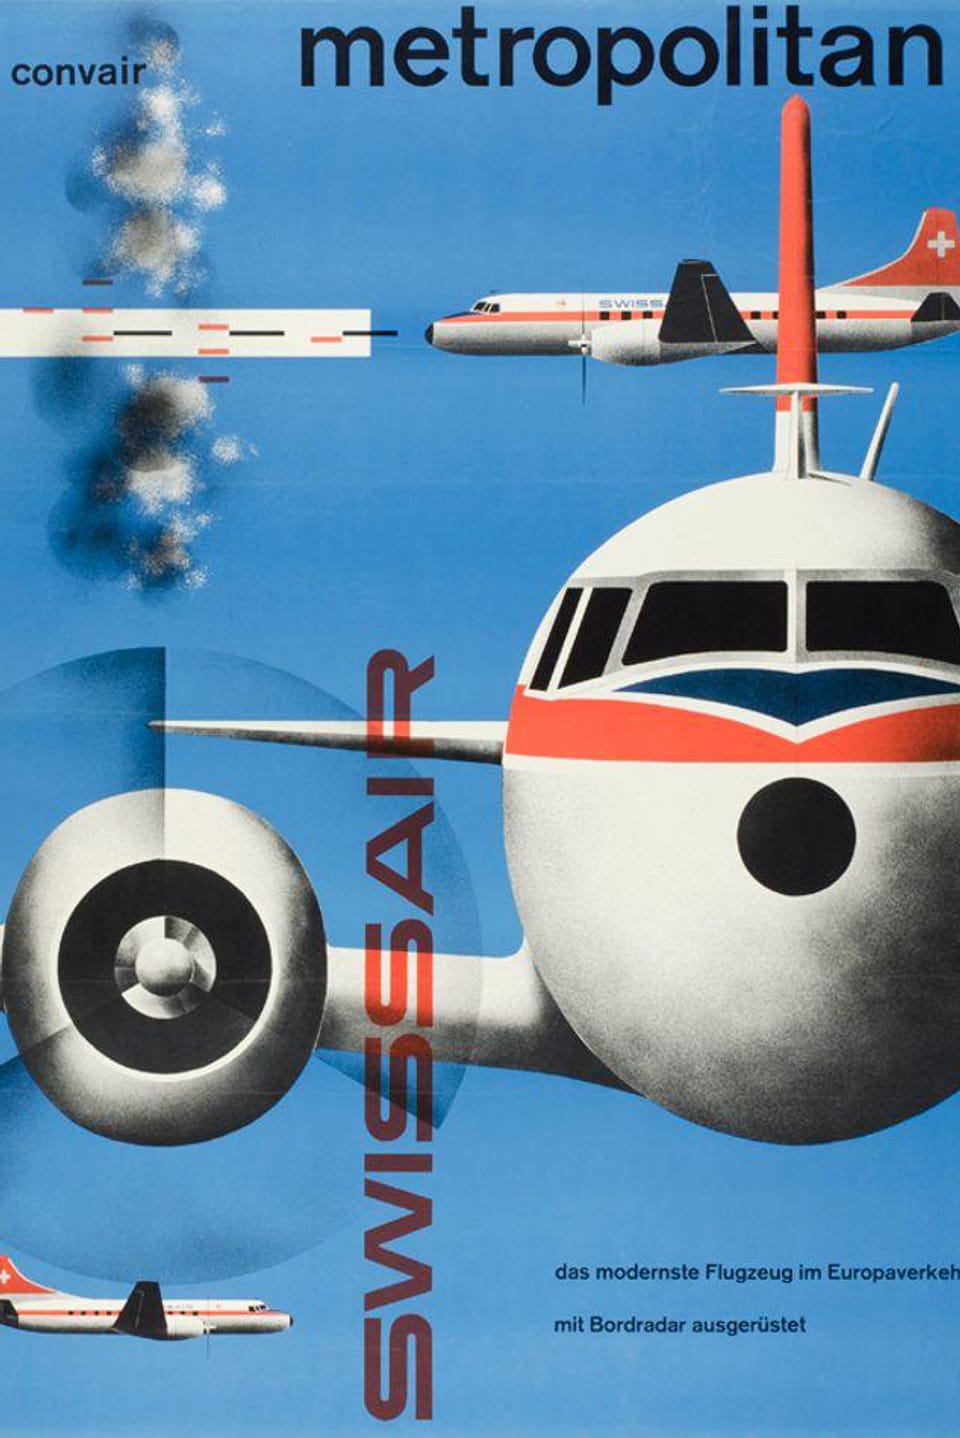 Plakat mit Flugzeug von vorne